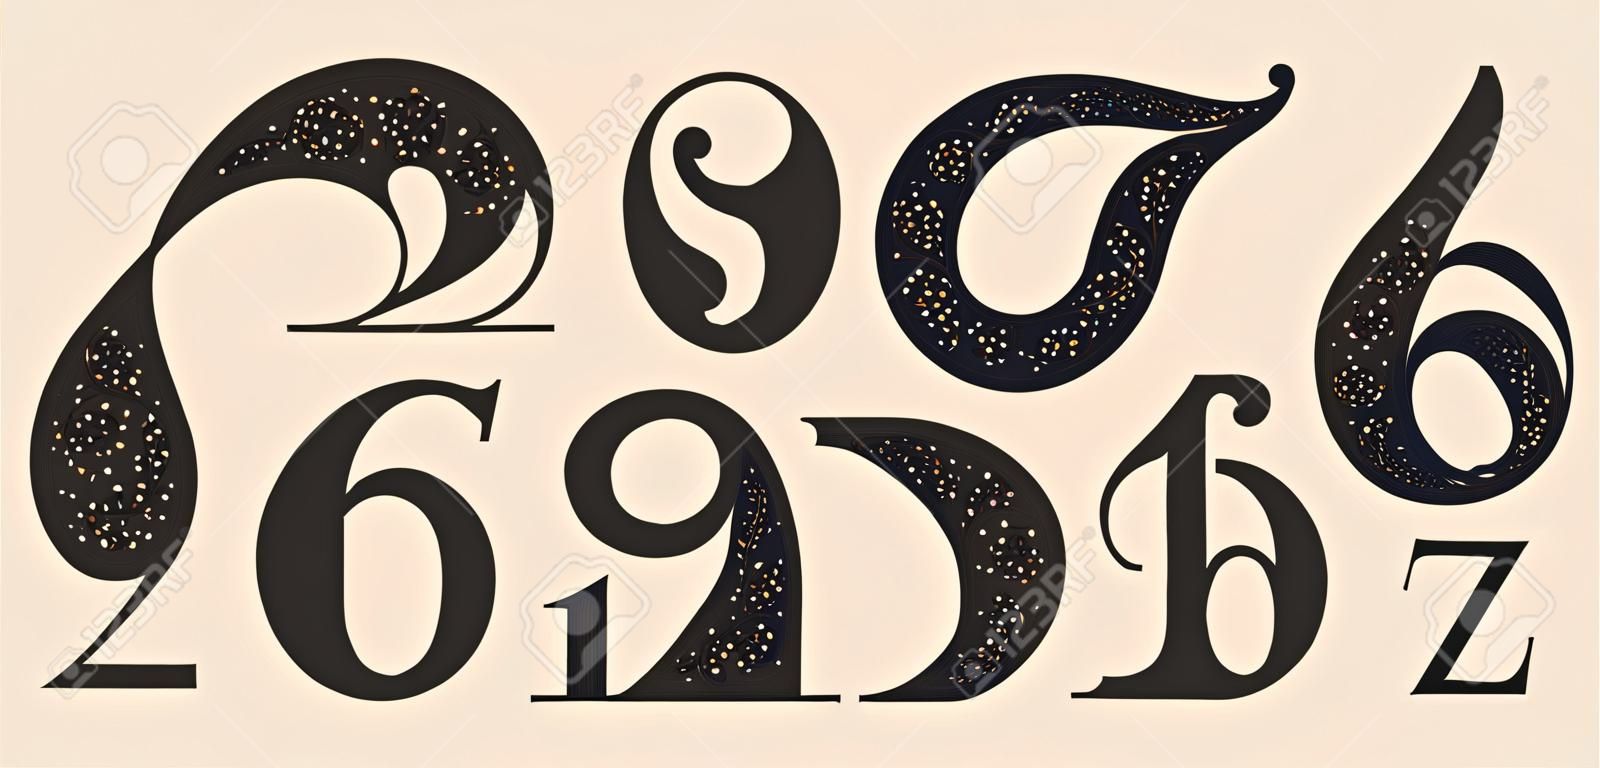 숫자 글꼴입니다. 현대적인 기하학적 디자인과 질감을 가진 고전적인 프랑스 디도트 또는 디돈 스타일의 숫자 글꼴. 잡지에 대한 빈티지 및 구식 복고풍 인쇄술. 벡터 일러스트 레이 션